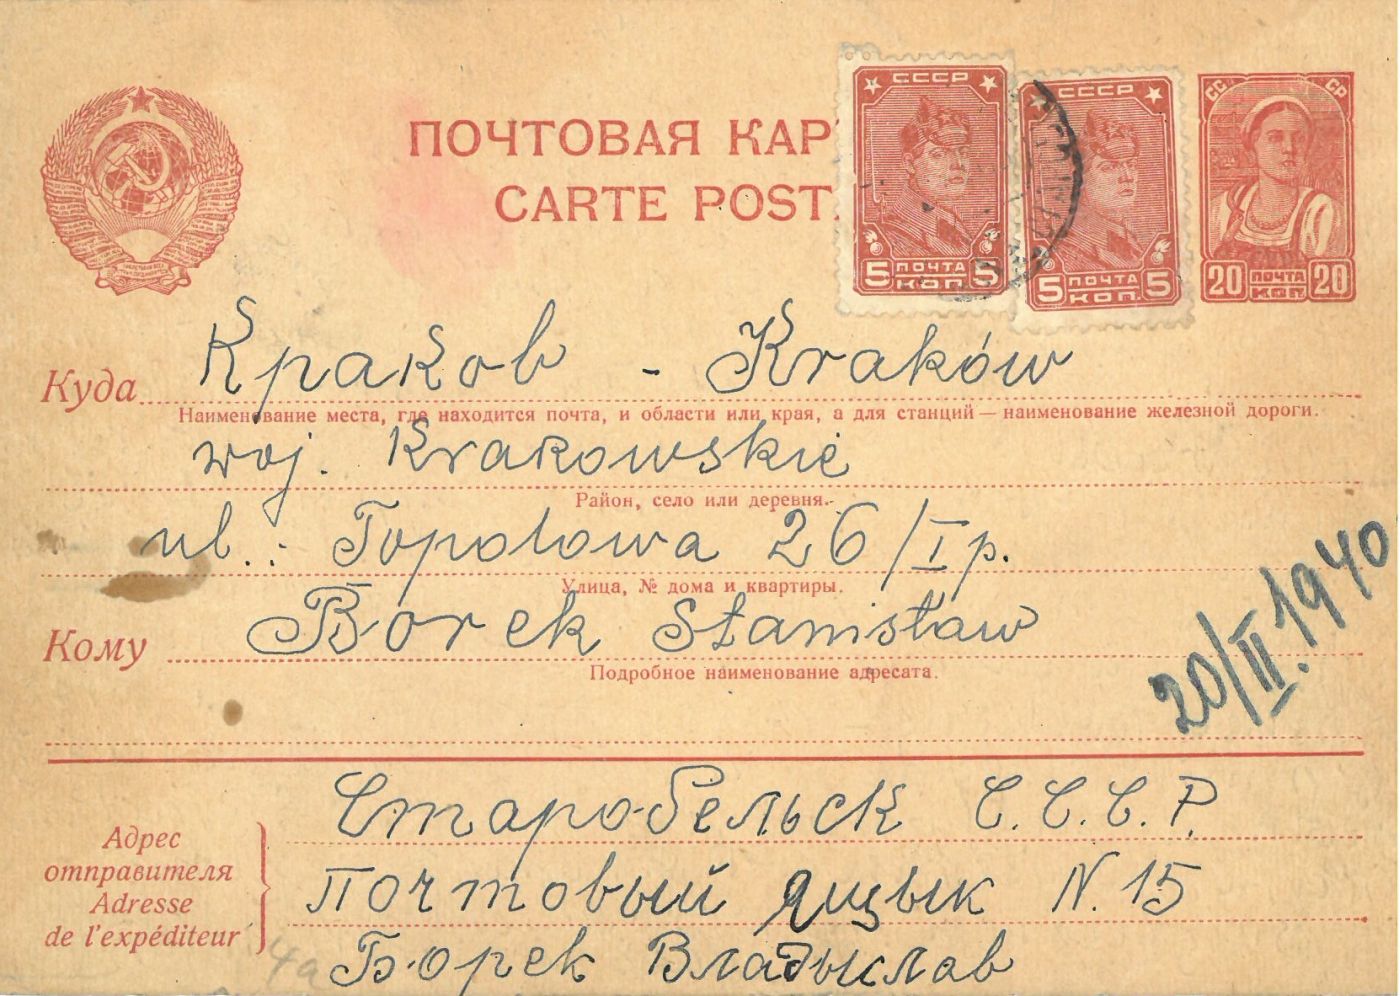 Karta pocztowa wysłana przez Władysława Borka, więzionego w obozie jenieckim w Starobielsku, zamordowanego w Charkowie w 1940 r. Sygnatura archiwalna: IR/1426.